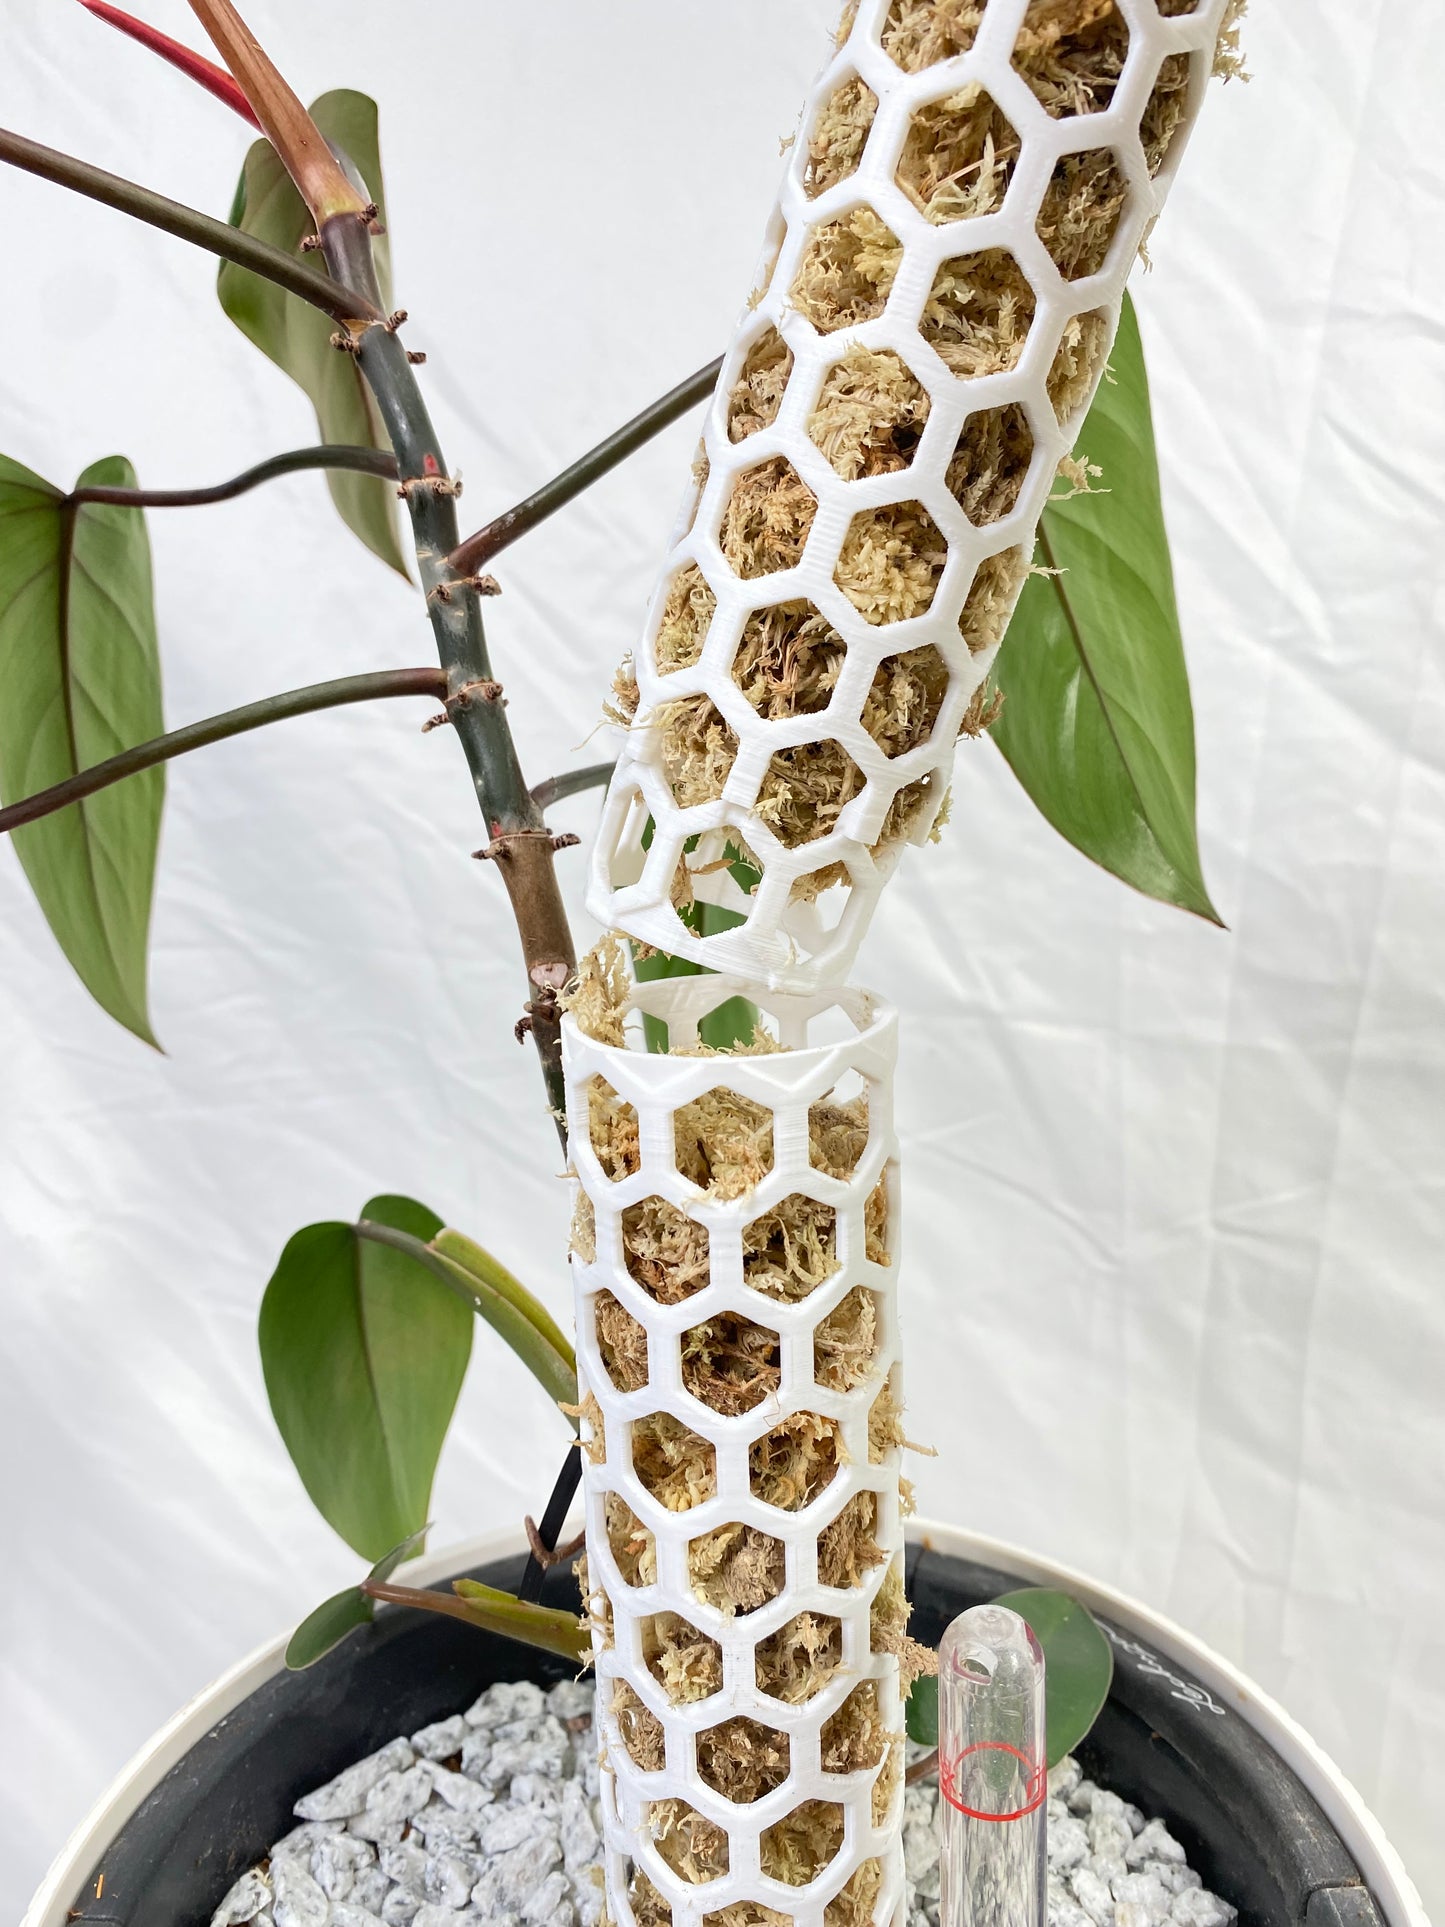 1.44″Φ/Small Designer Moss Pole - Modular Extendable Plant Moss Pole with Self-Watering Features